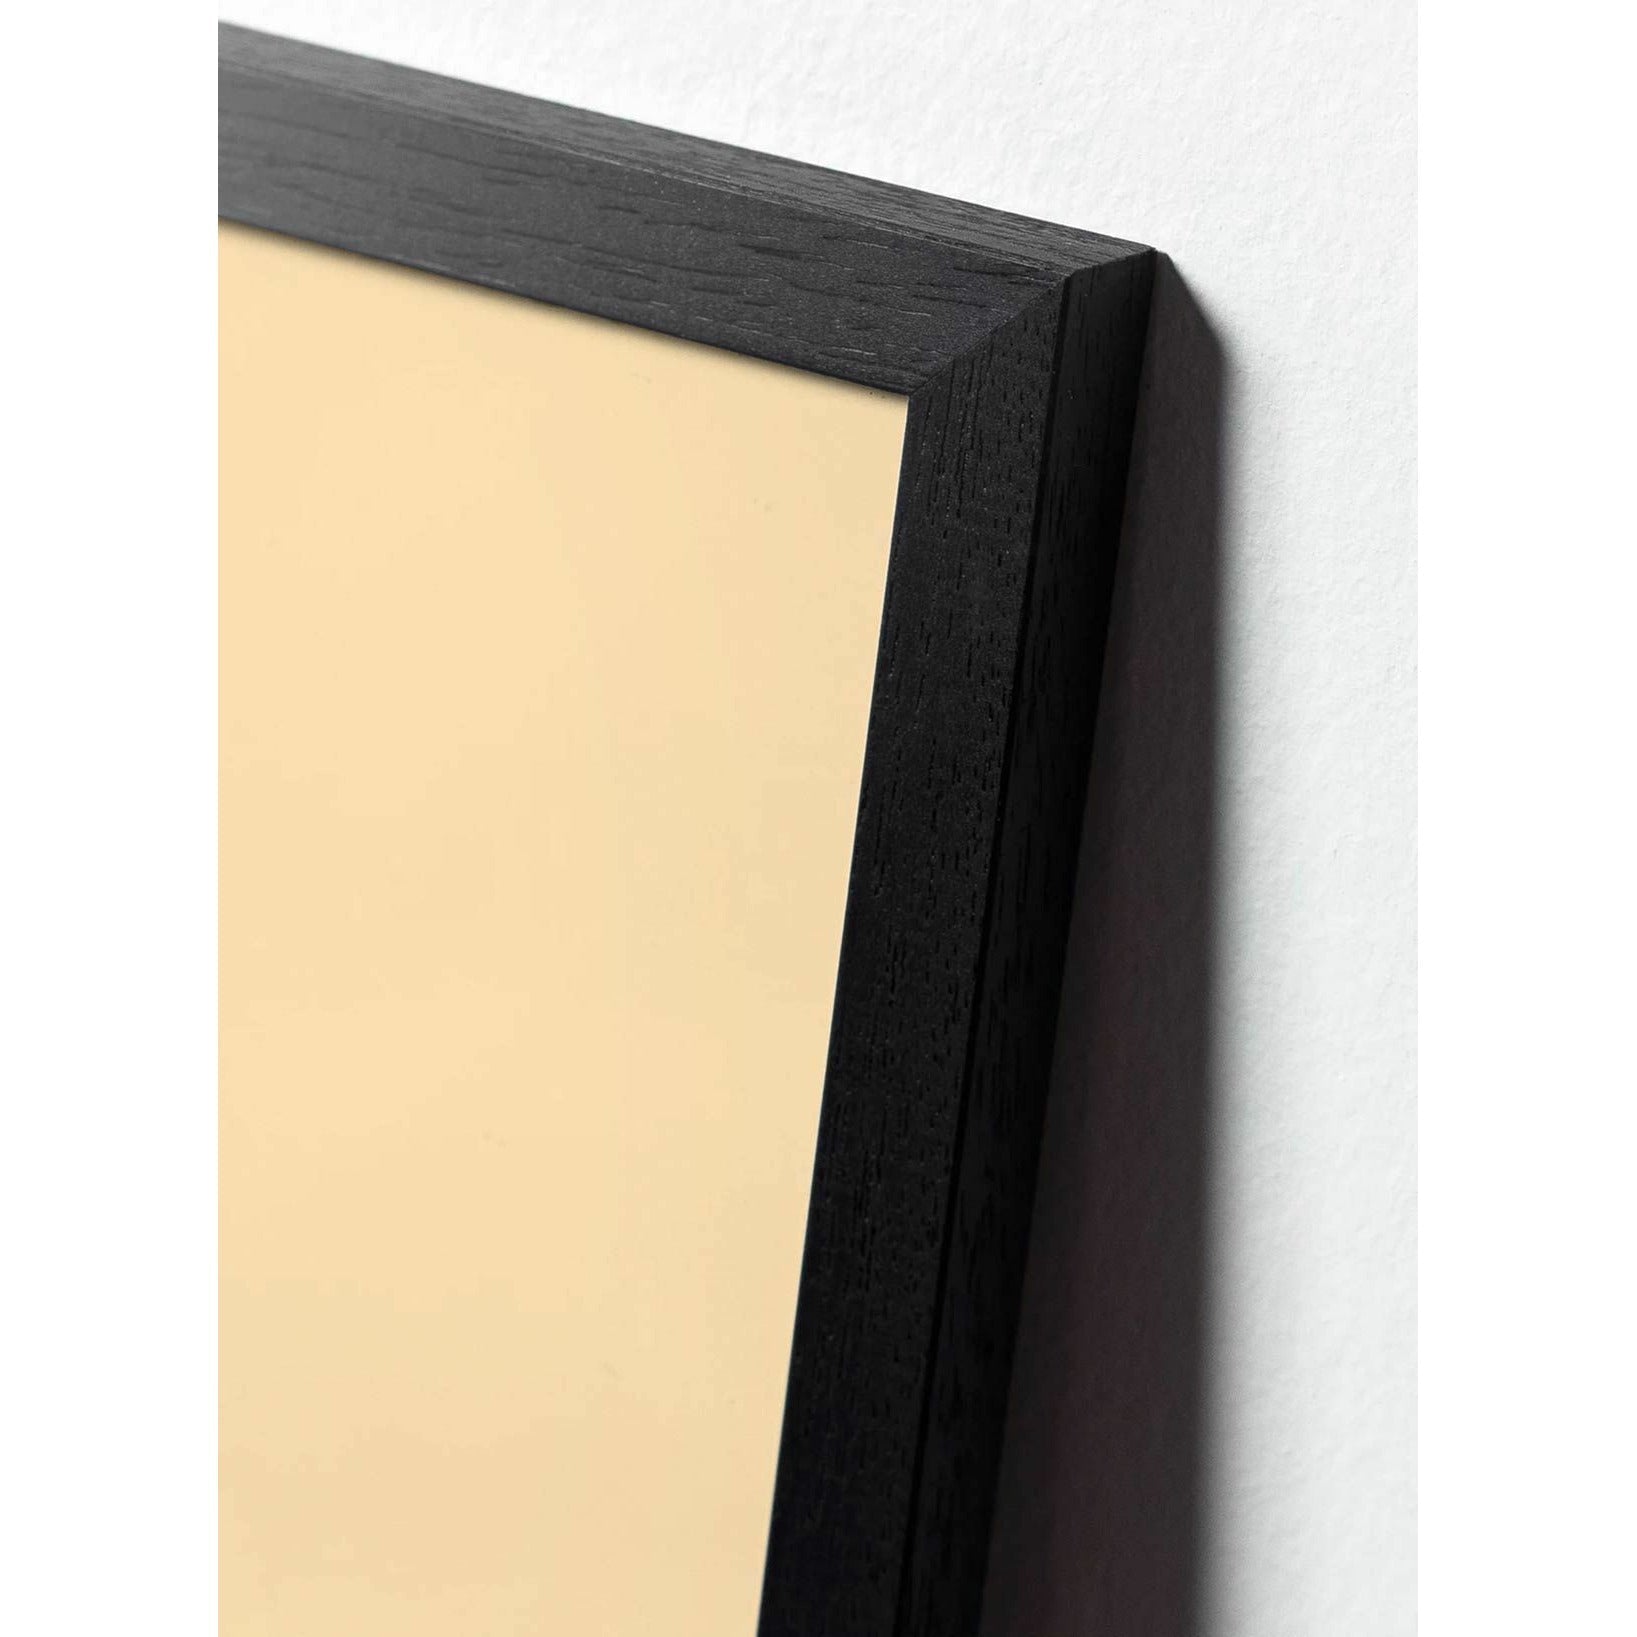 Brainchild Ameise Classic Poster, Rahmen aus schwarz lackiertem Holz 50x70 cm, sandfarbener Hintergrund